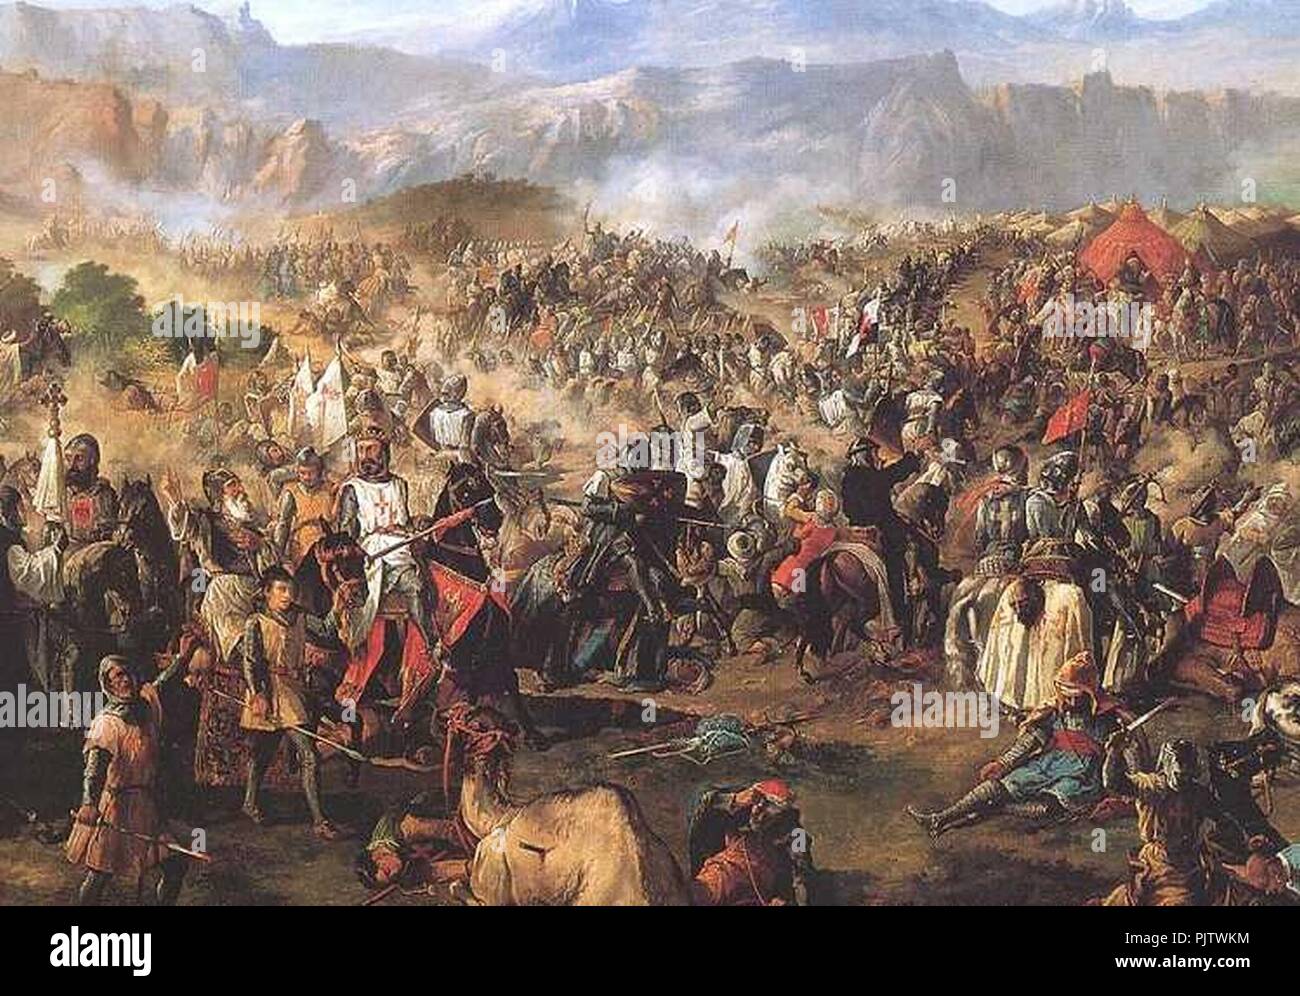 Battle of Las Navas de Tolosa Stock Photo - Alamy